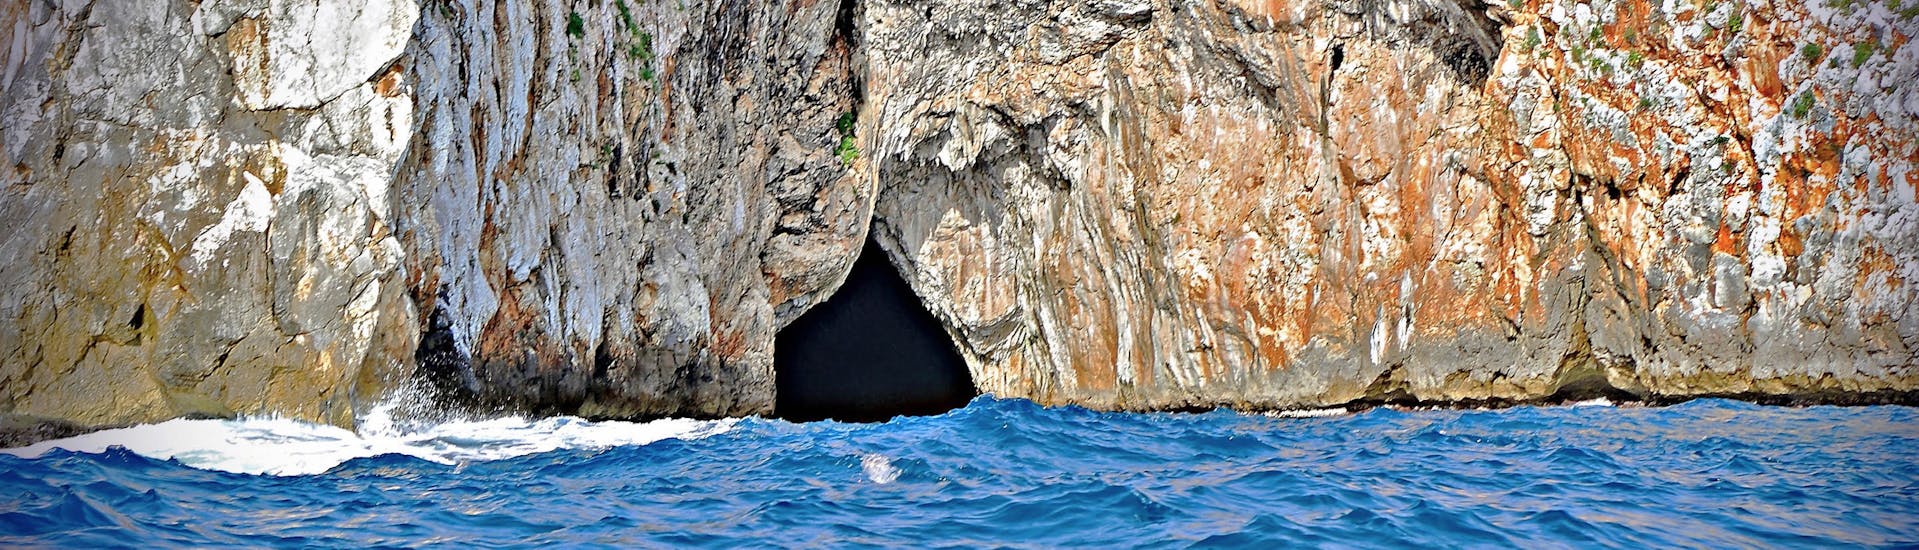 Giro in Barca Privato alle Grotte del Salento da Andrano Marina.